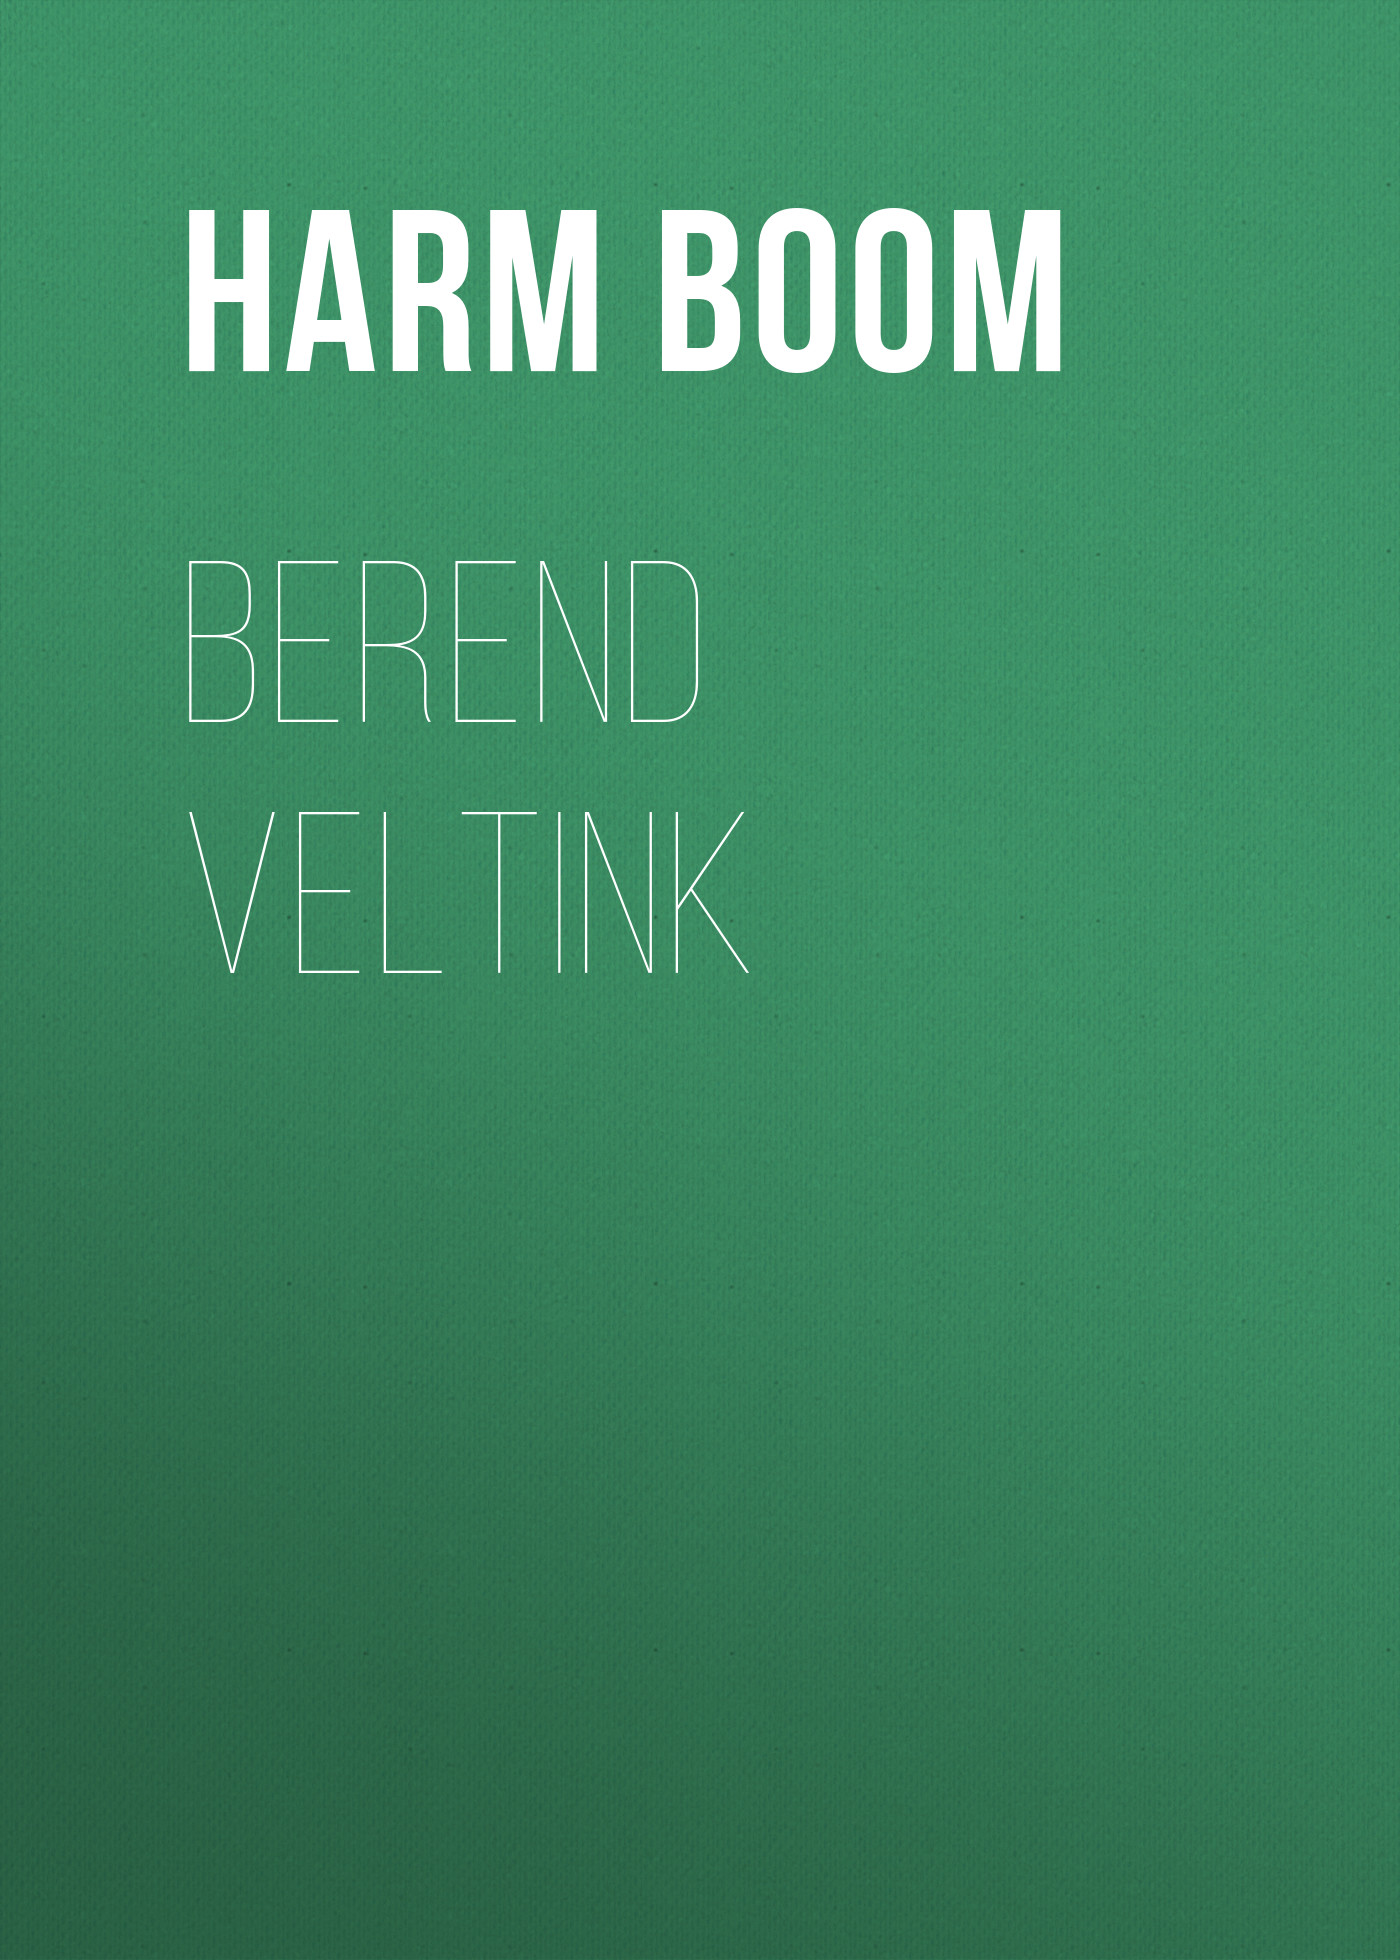 Книга Berend Veltink из серии , созданная Harm Boom, может относится к жанру Зарубежная старинная литература, Зарубежная классика. Стоимость электронной книги Berend Veltink с идентификатором 24173820 составляет 0.90 руб.